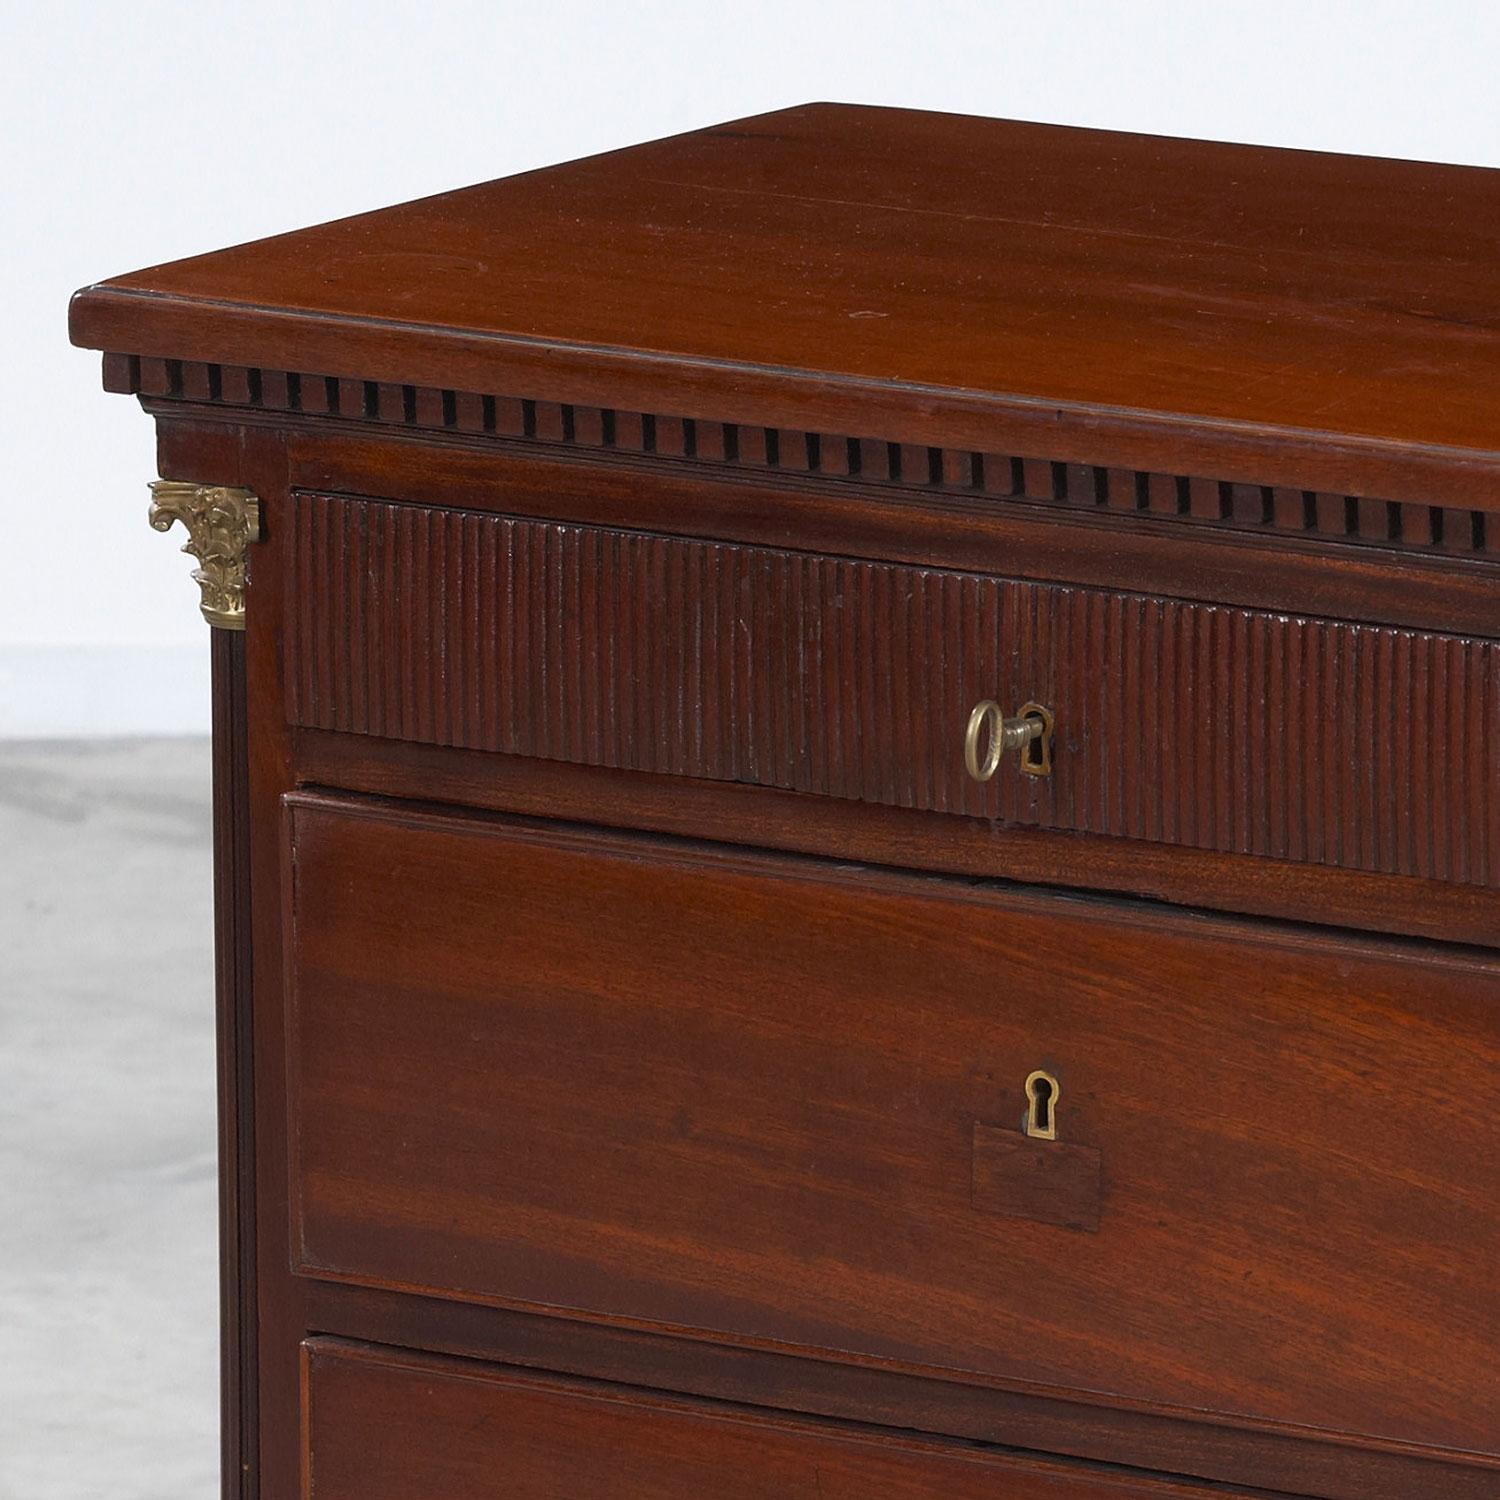 Danish Louis XVI mahogany chest of drawers from Copenhagen, circa 1790.
